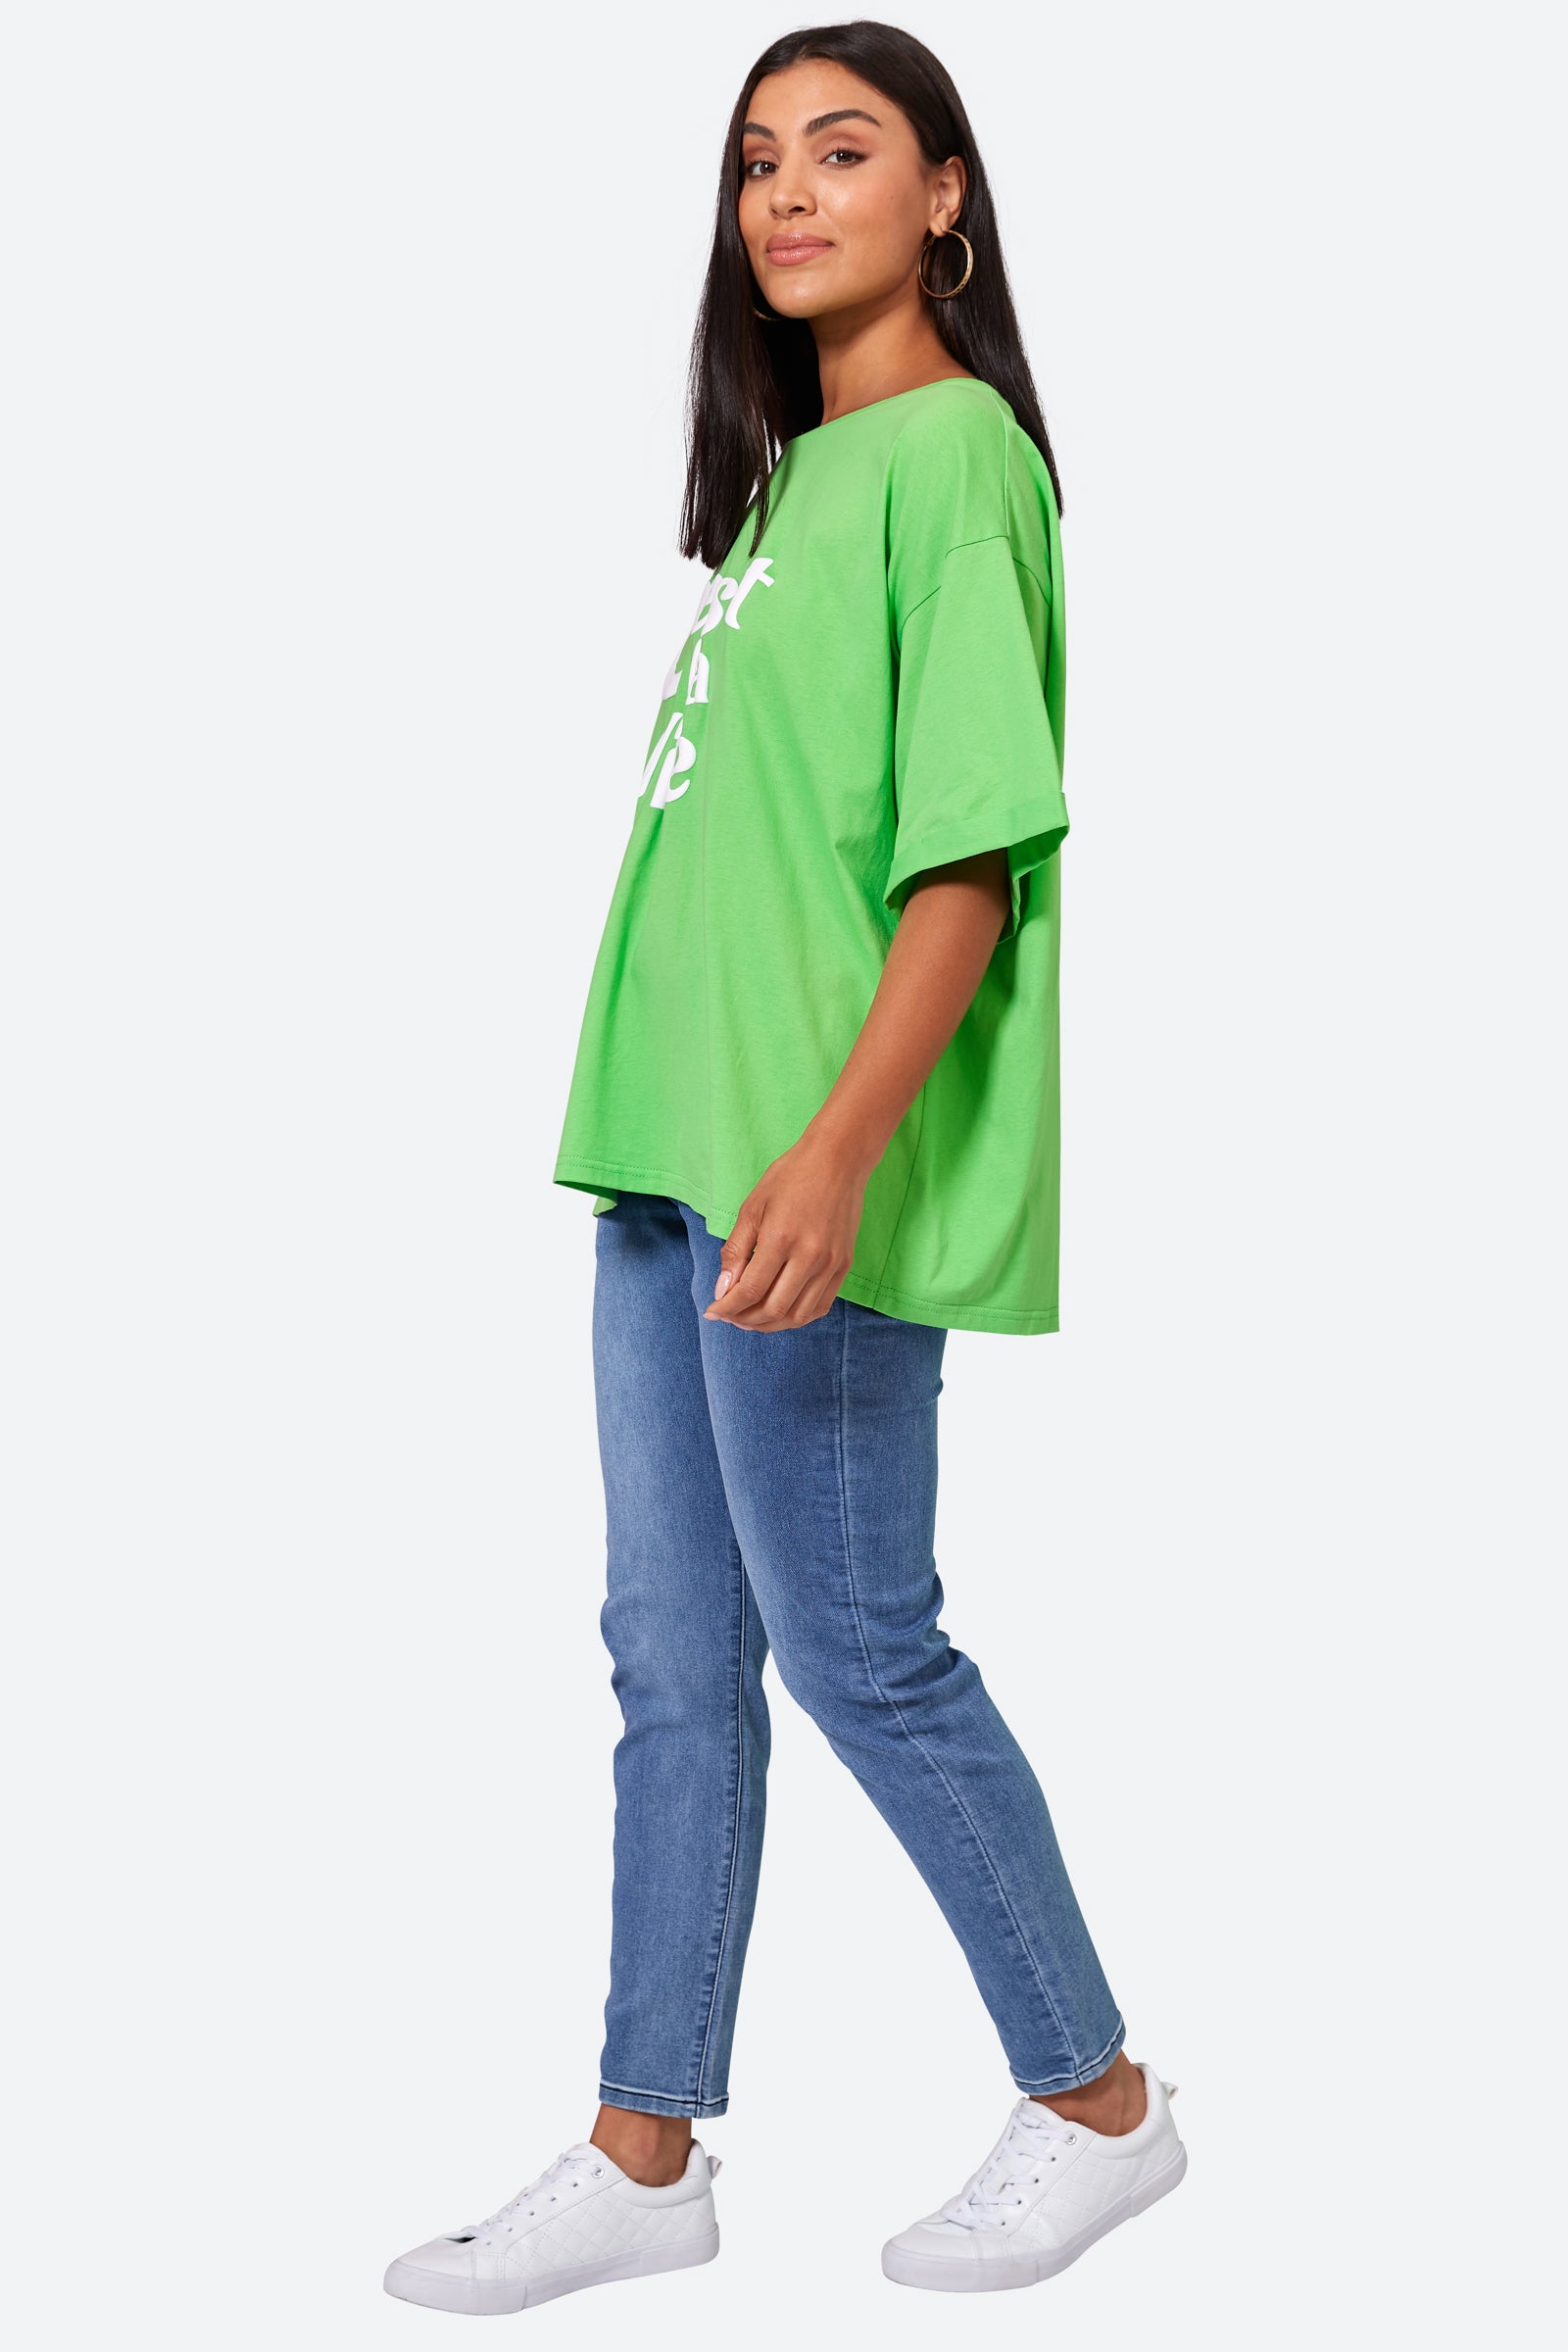 C'est La Vie Tshirt - Kiwi - eb&ive Clothing - Top Tshirt S/S One Size